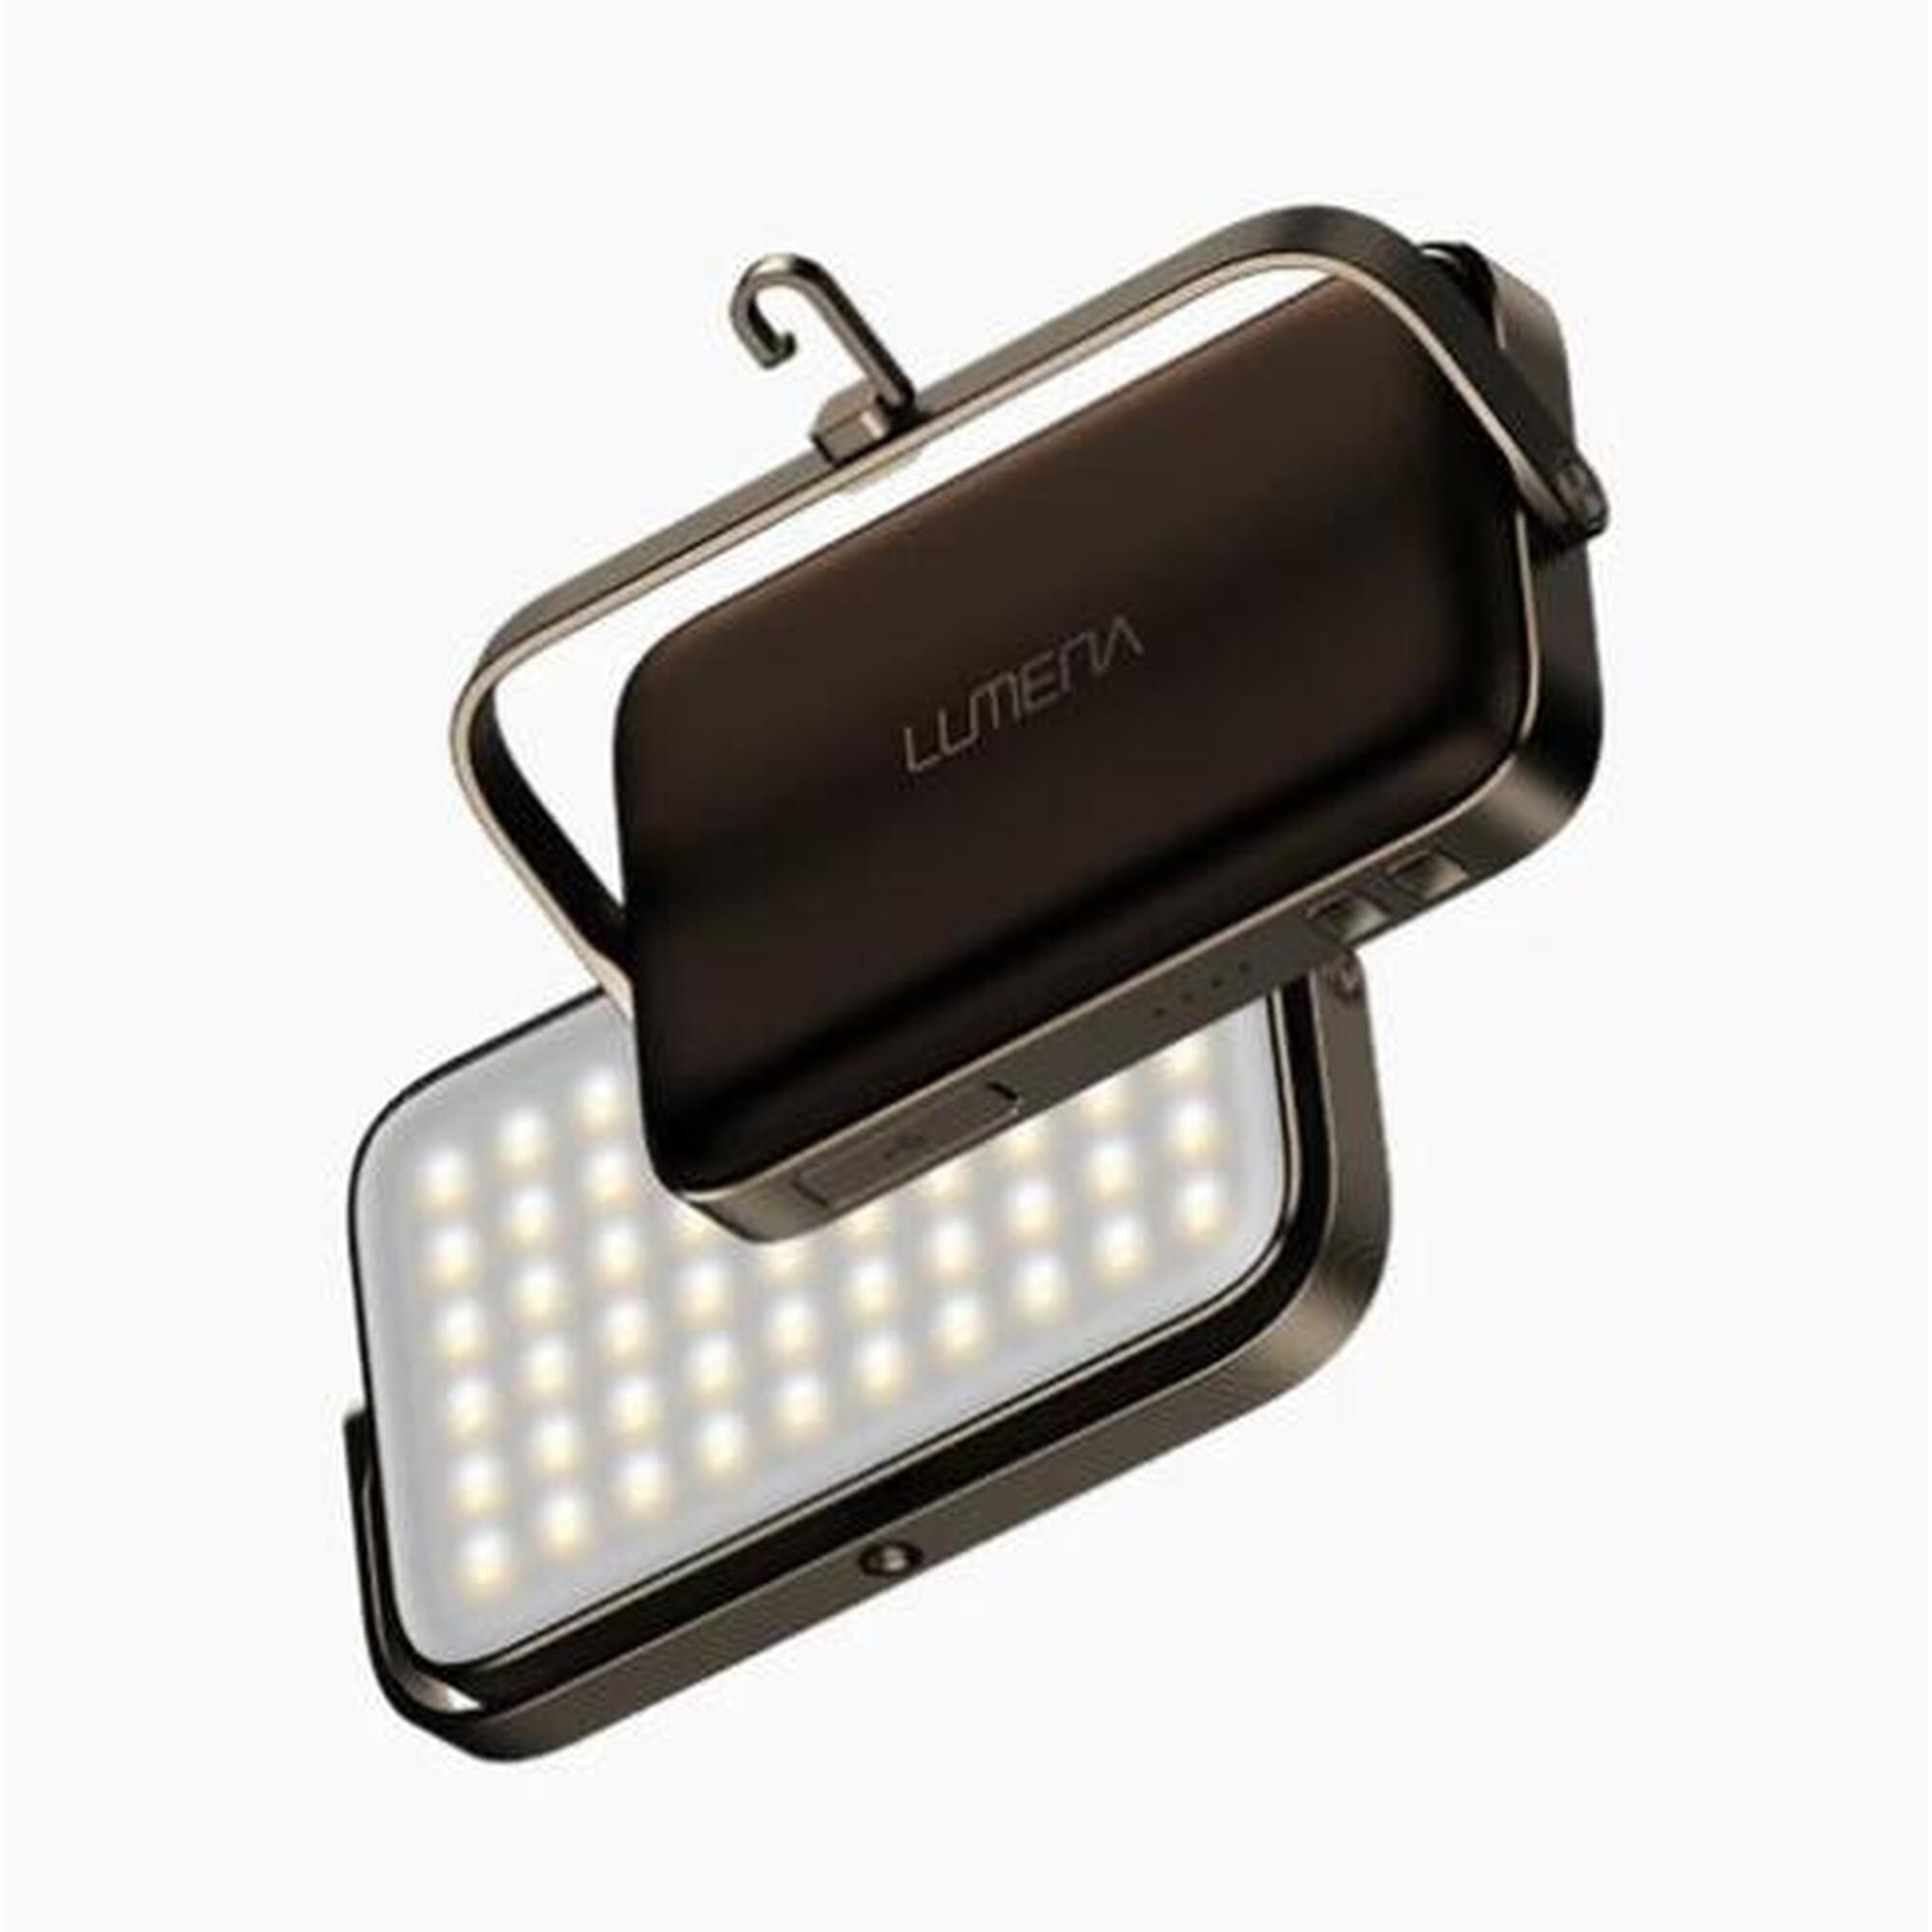 PLUS2 LED Lamp (Brown)